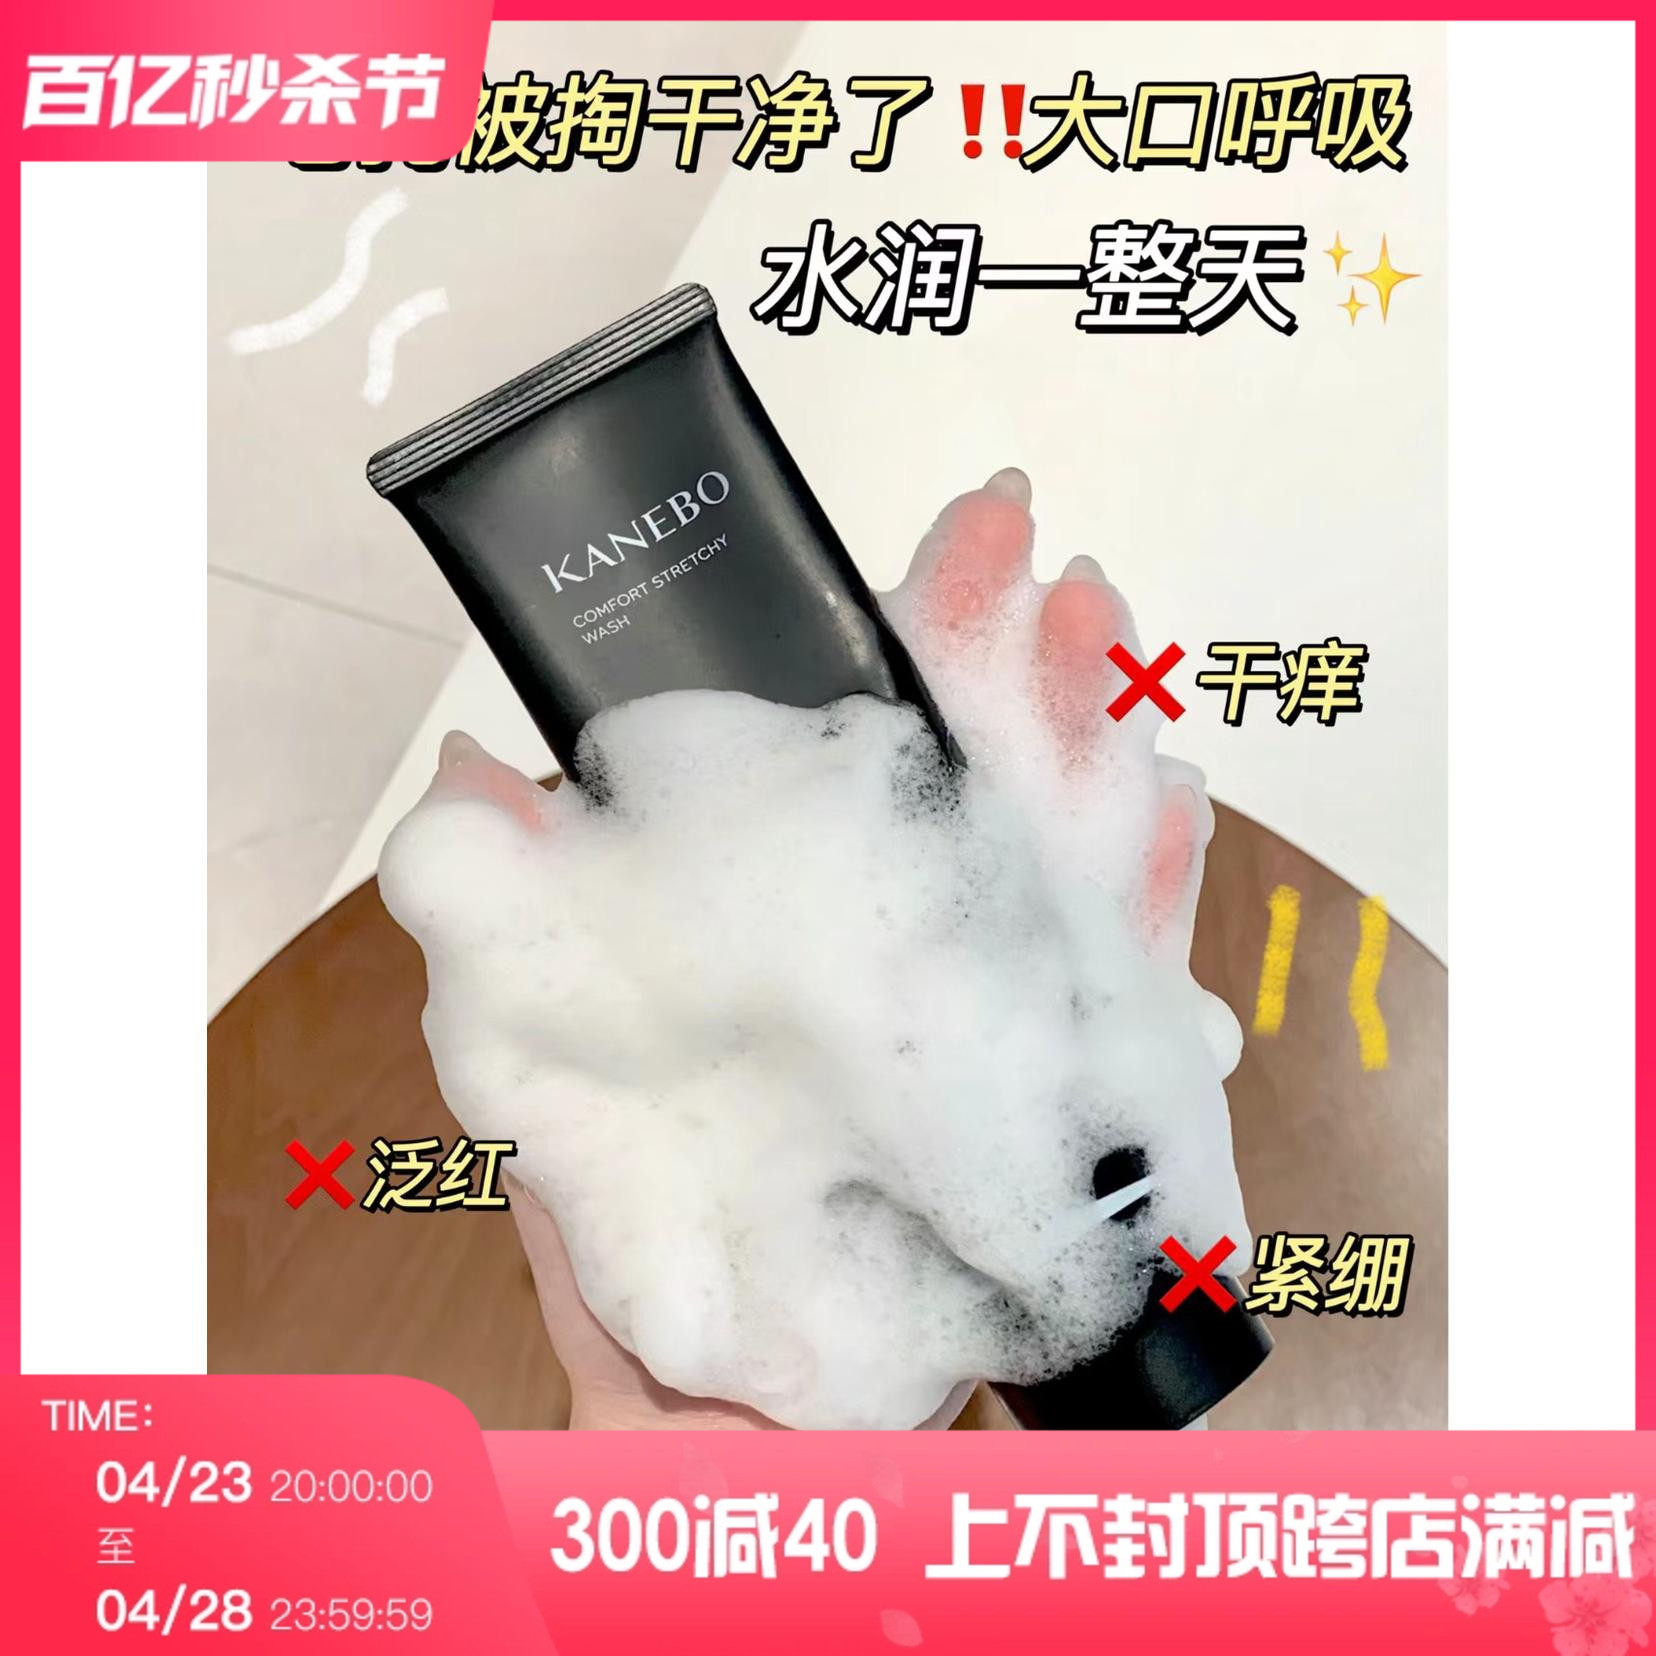 日本专柜KANEBO/嘉娜宝 普通版拉丝顺滑泡沫洁面洗面奶130g